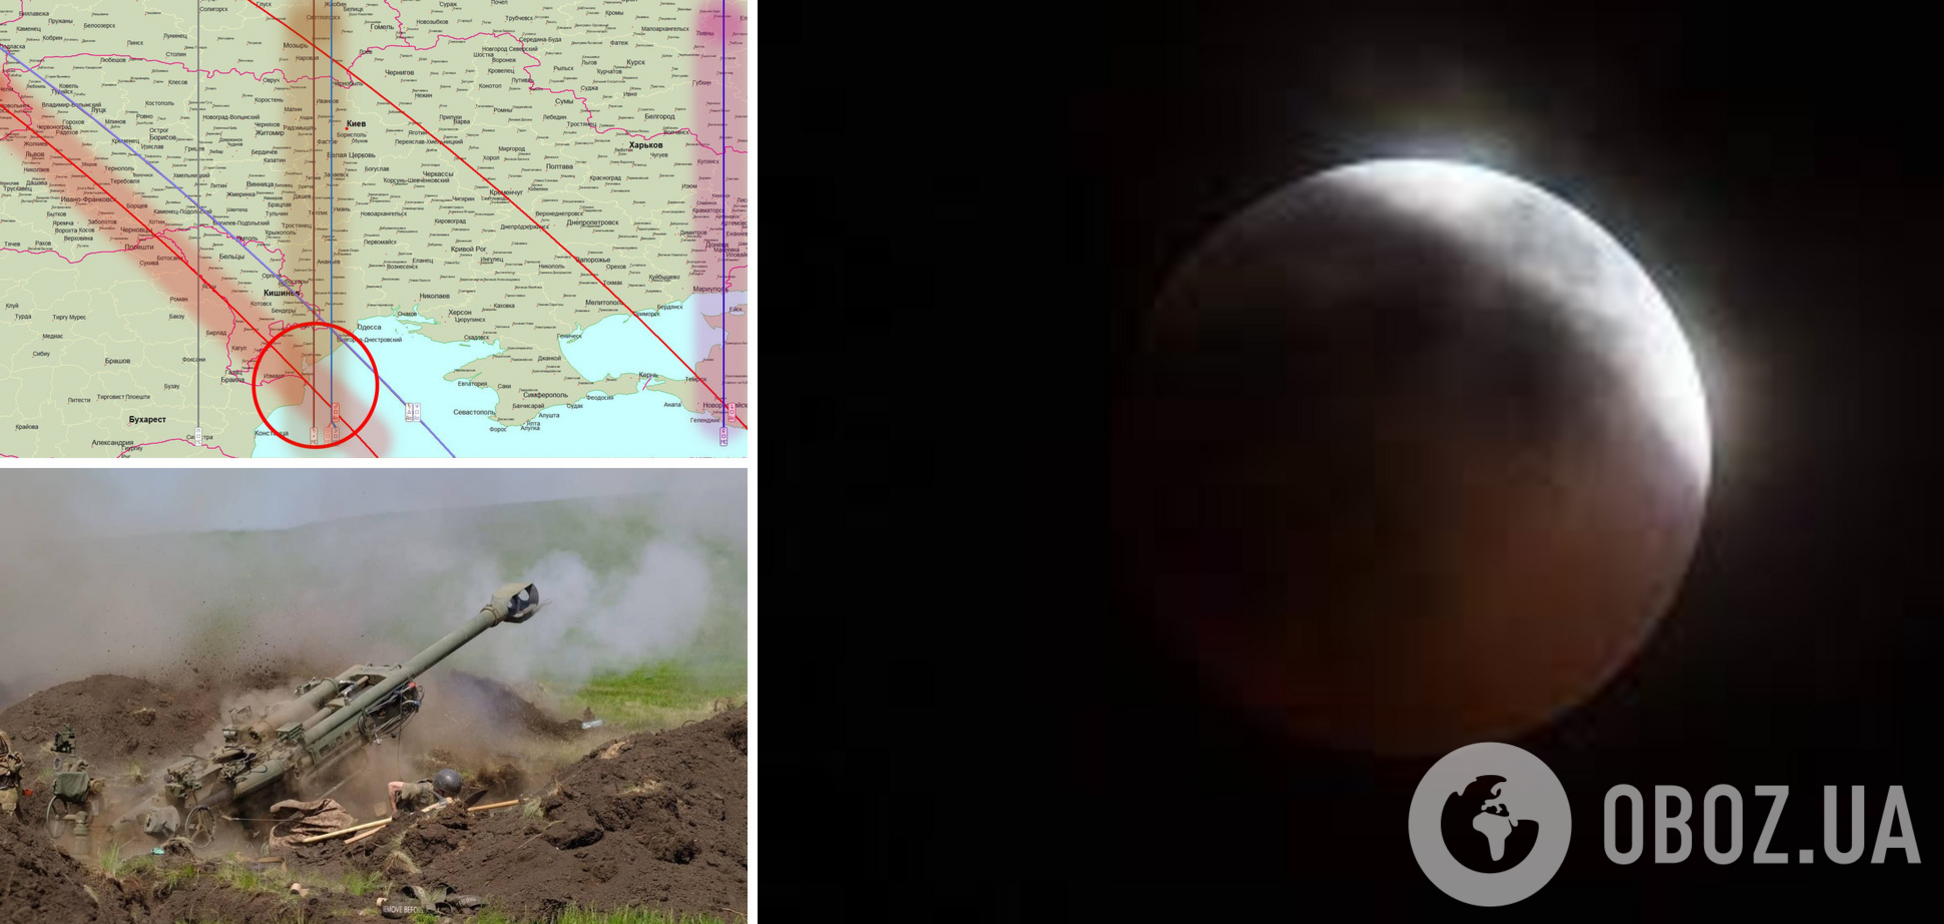 Новый виток насилия и убийств: астролог рассказал, что принесет лунное затмение 16 мая Украине